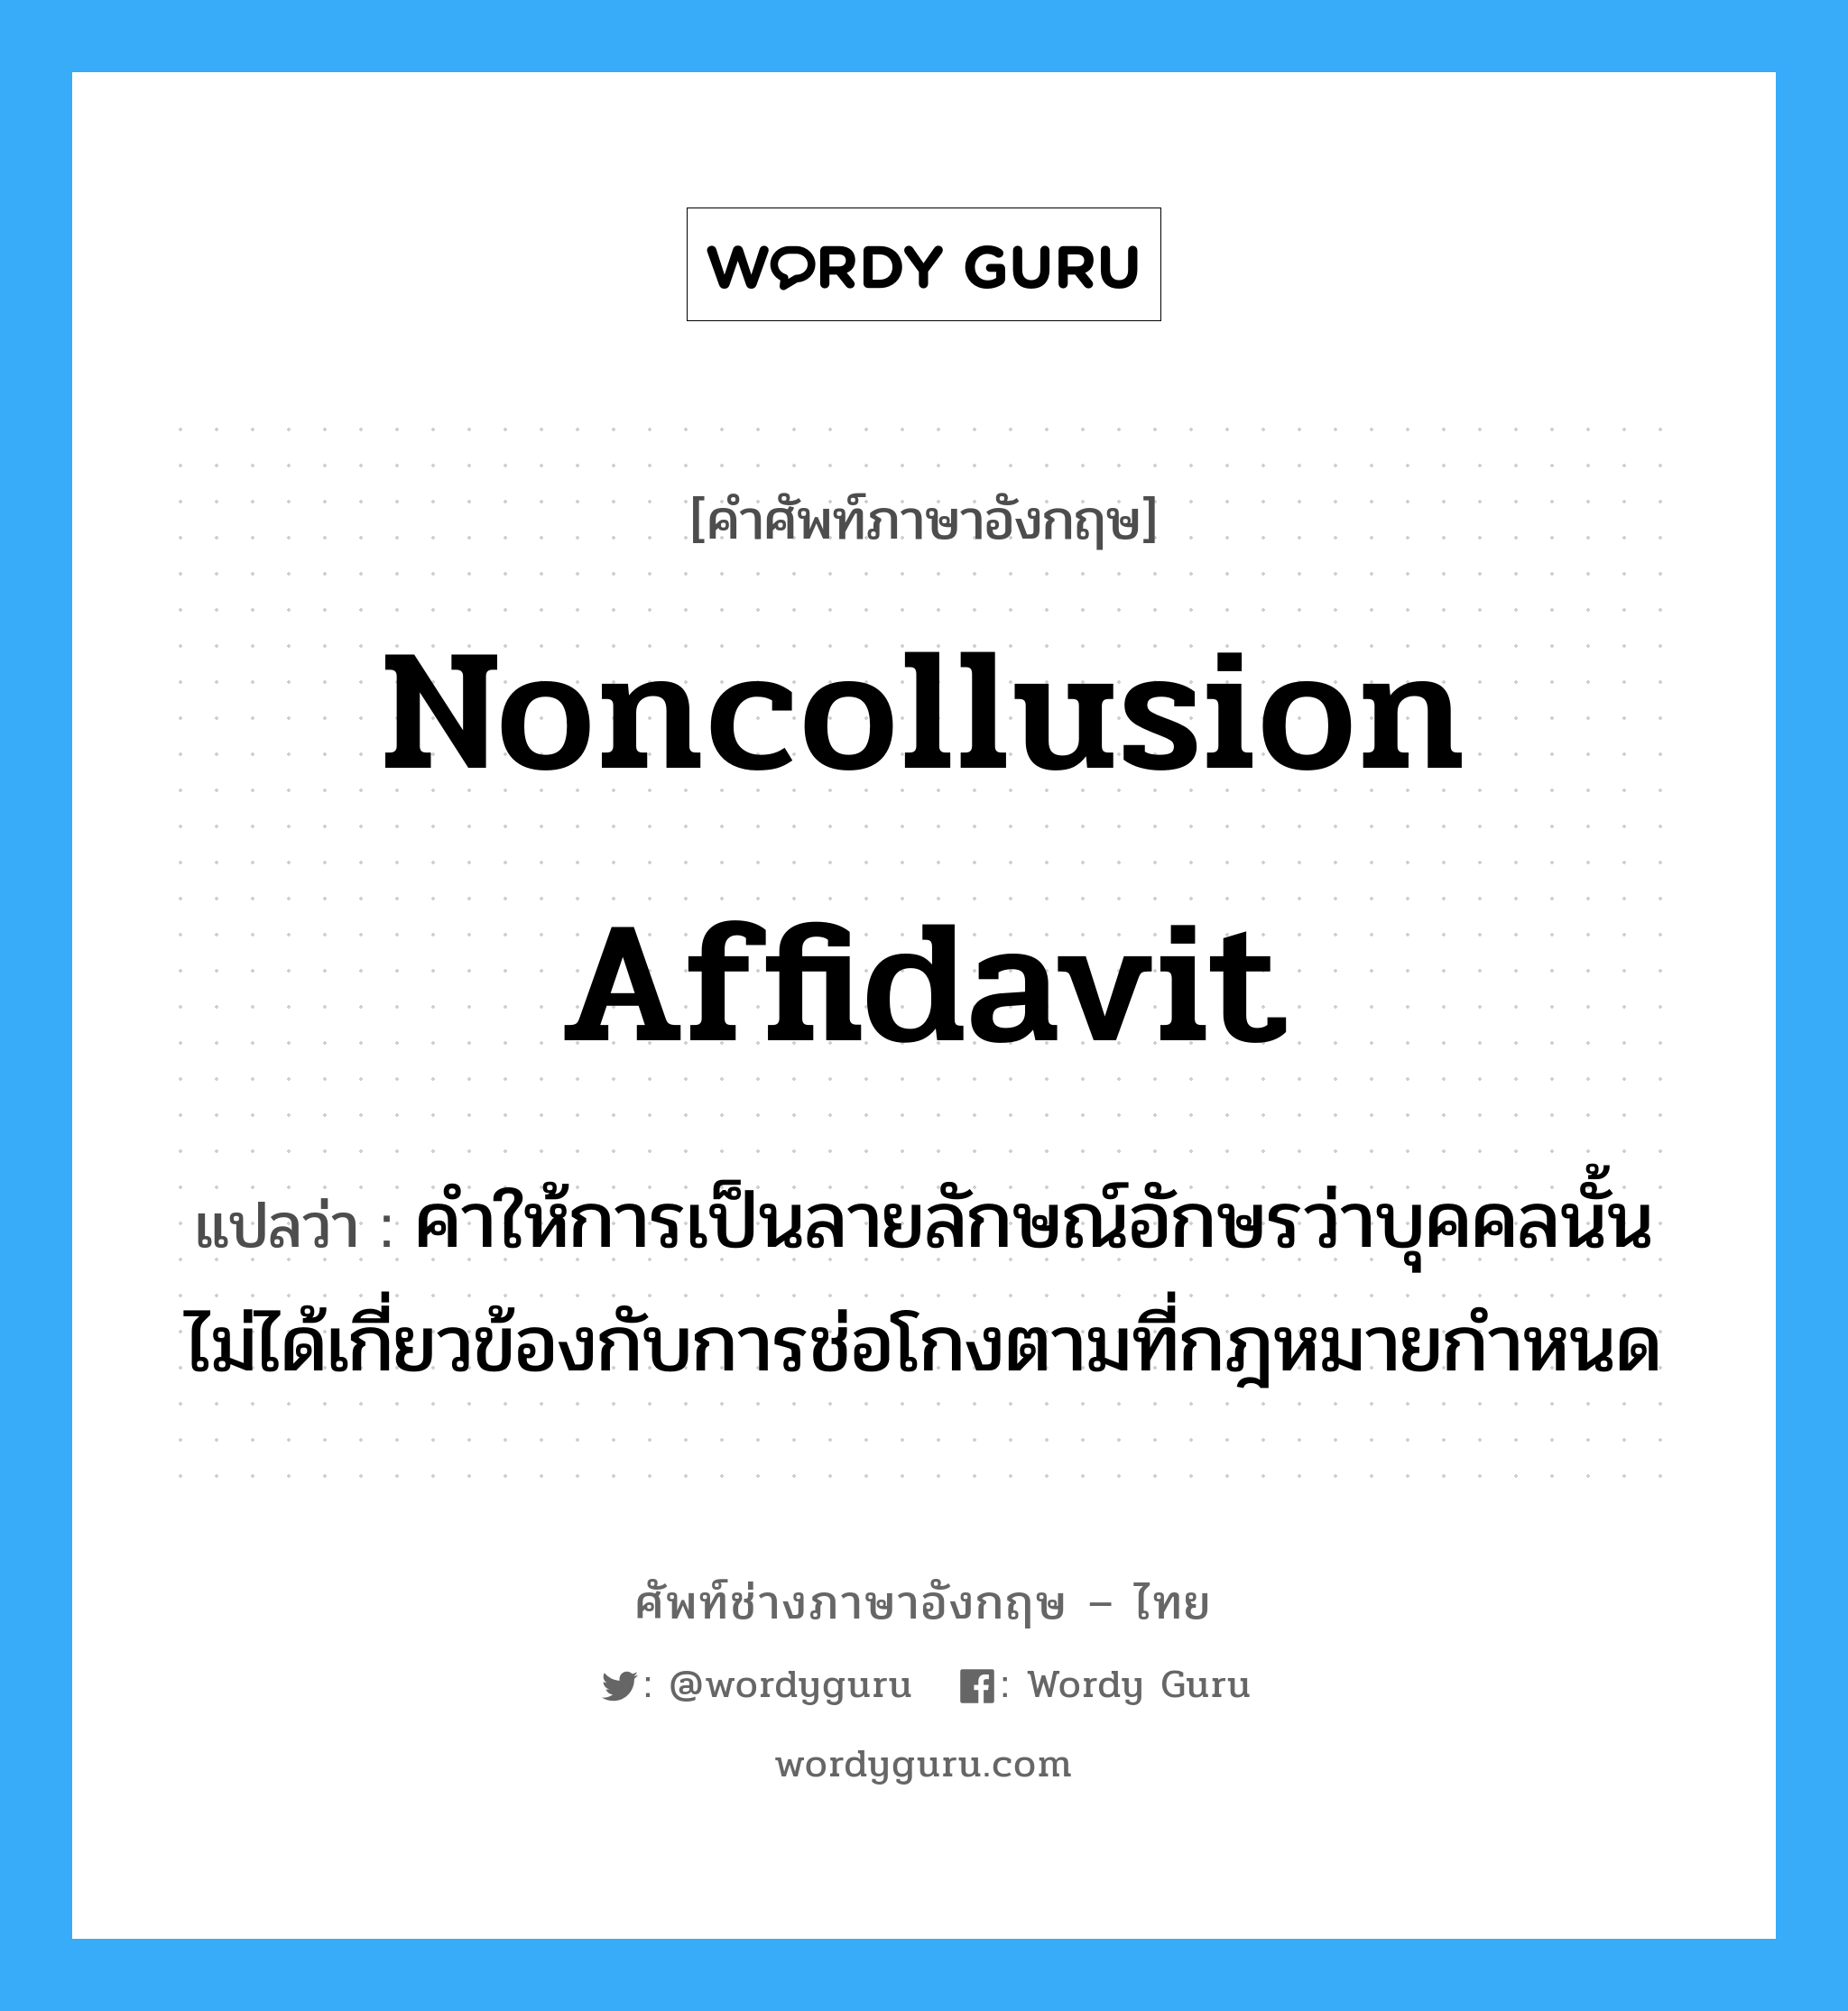 Noncollusion affidavit แปลว่า?, คำศัพท์ช่างภาษาอังกฤษ - ไทย Noncollusion affidavit คำศัพท์ภาษาอังกฤษ Noncollusion affidavit แปลว่า คำให้การเป็นลายลักษณ์อักษรว่าบุคคลนั้นไม่ได้เกี่ยวข้องกับการช่อโกงตามที่กฎหมายกำหนด